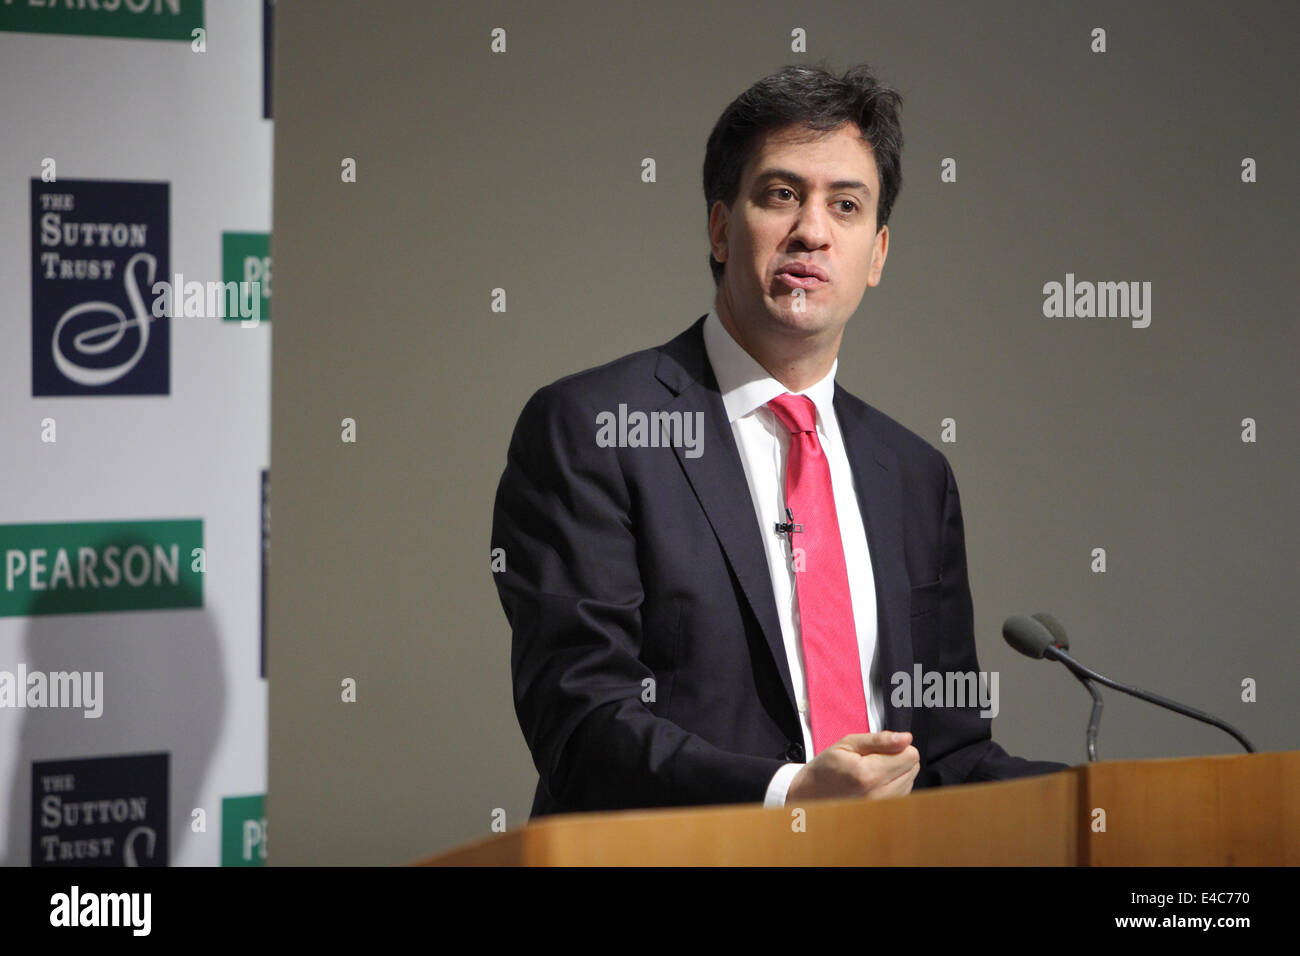 Londres, Royaume-Uni. 8 juillet, 2014. Rt Hon Ed Miliband MP parler à la Pearson/Sutton Trust des ambitions supérieures à Londres. sommet Credit : Zute Lightfoot/Alamy Live News Banque D'Images